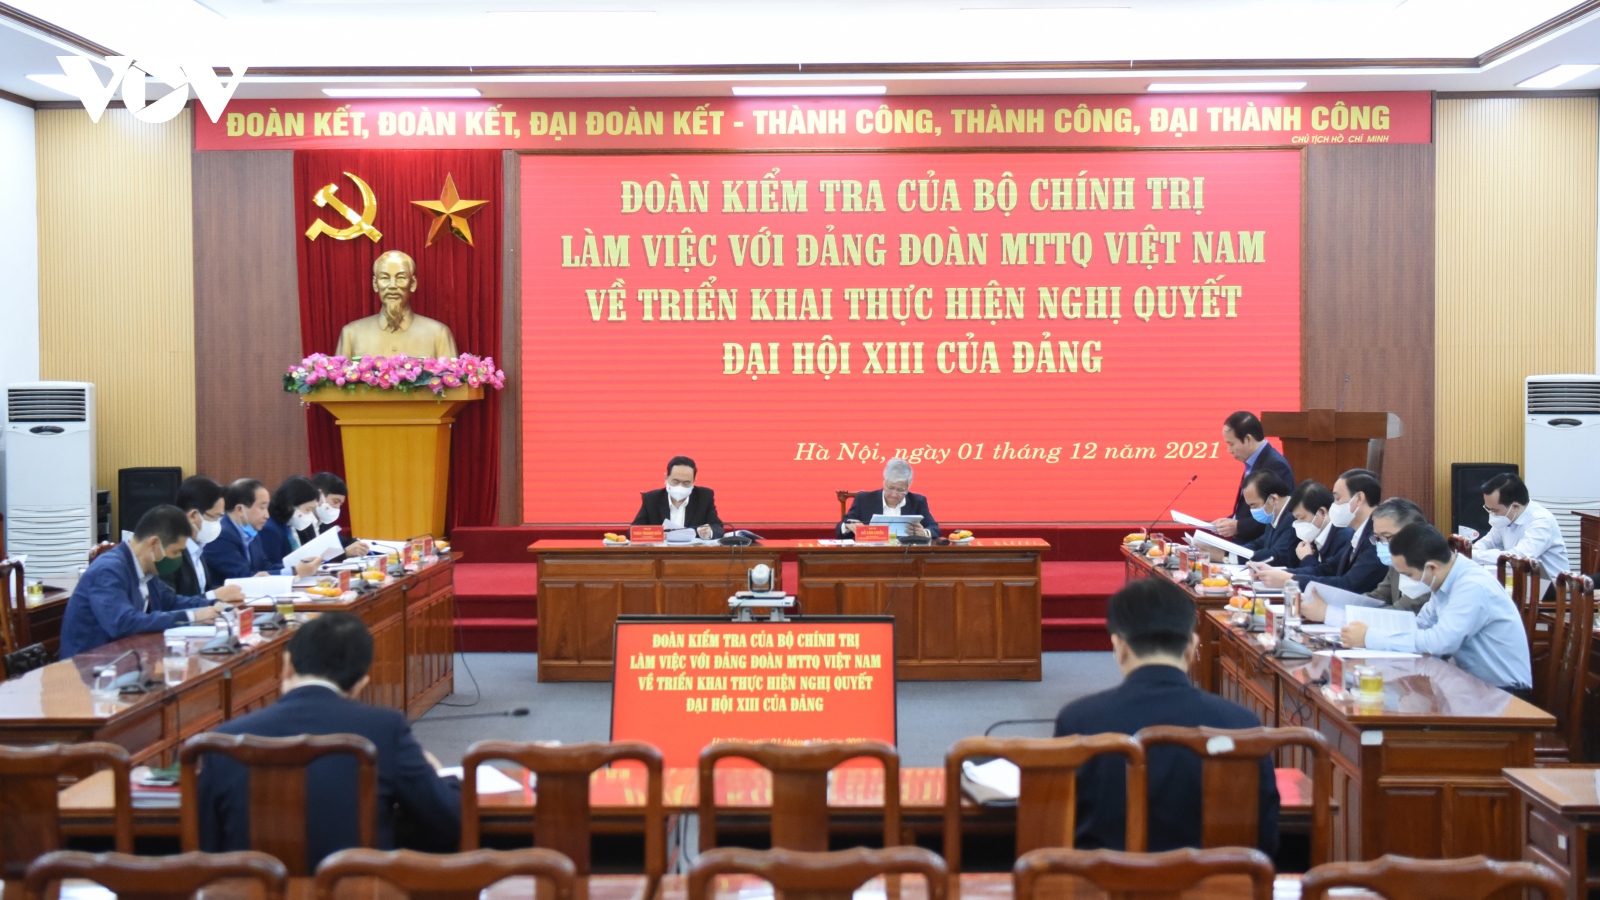 Đoàn Kiểm tra của Bộ Chính trị làm việc với Đảng Đoàn MTTQ Việt Nam